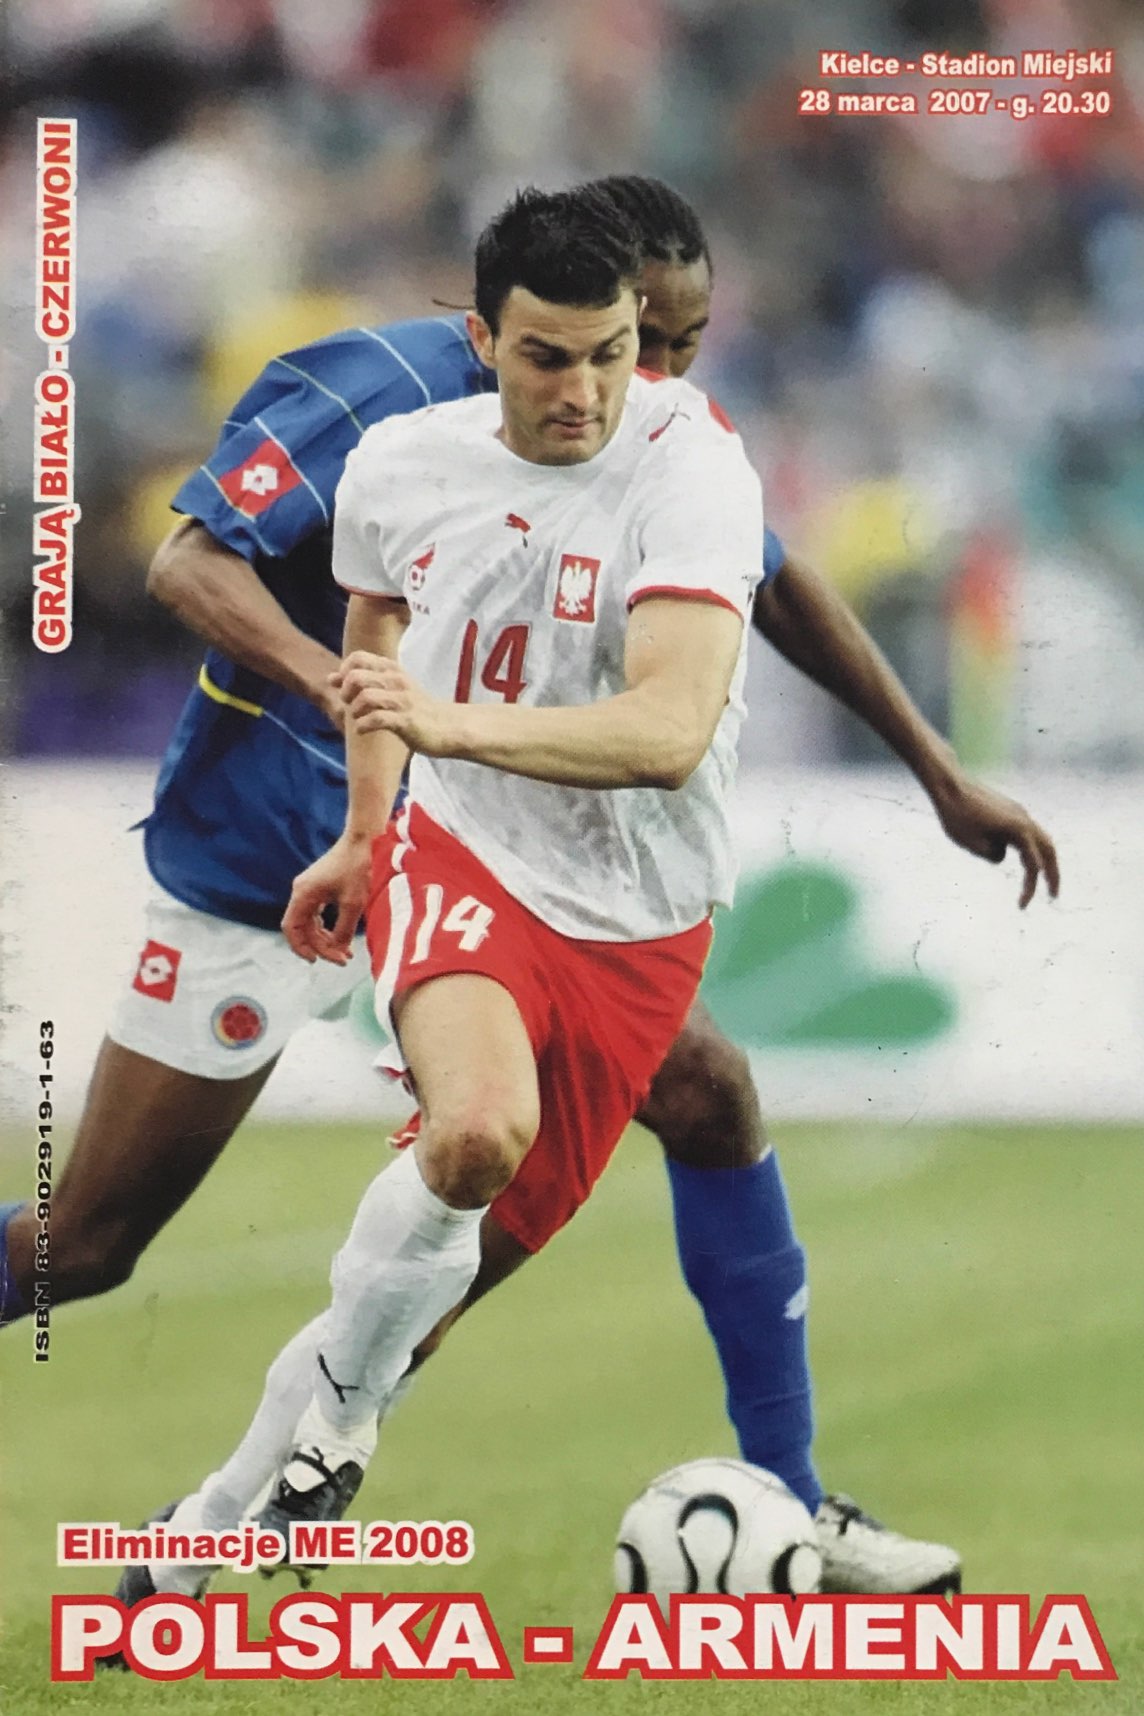 Program meczowy Polska - Armenia 1:0 (28.03.2007)